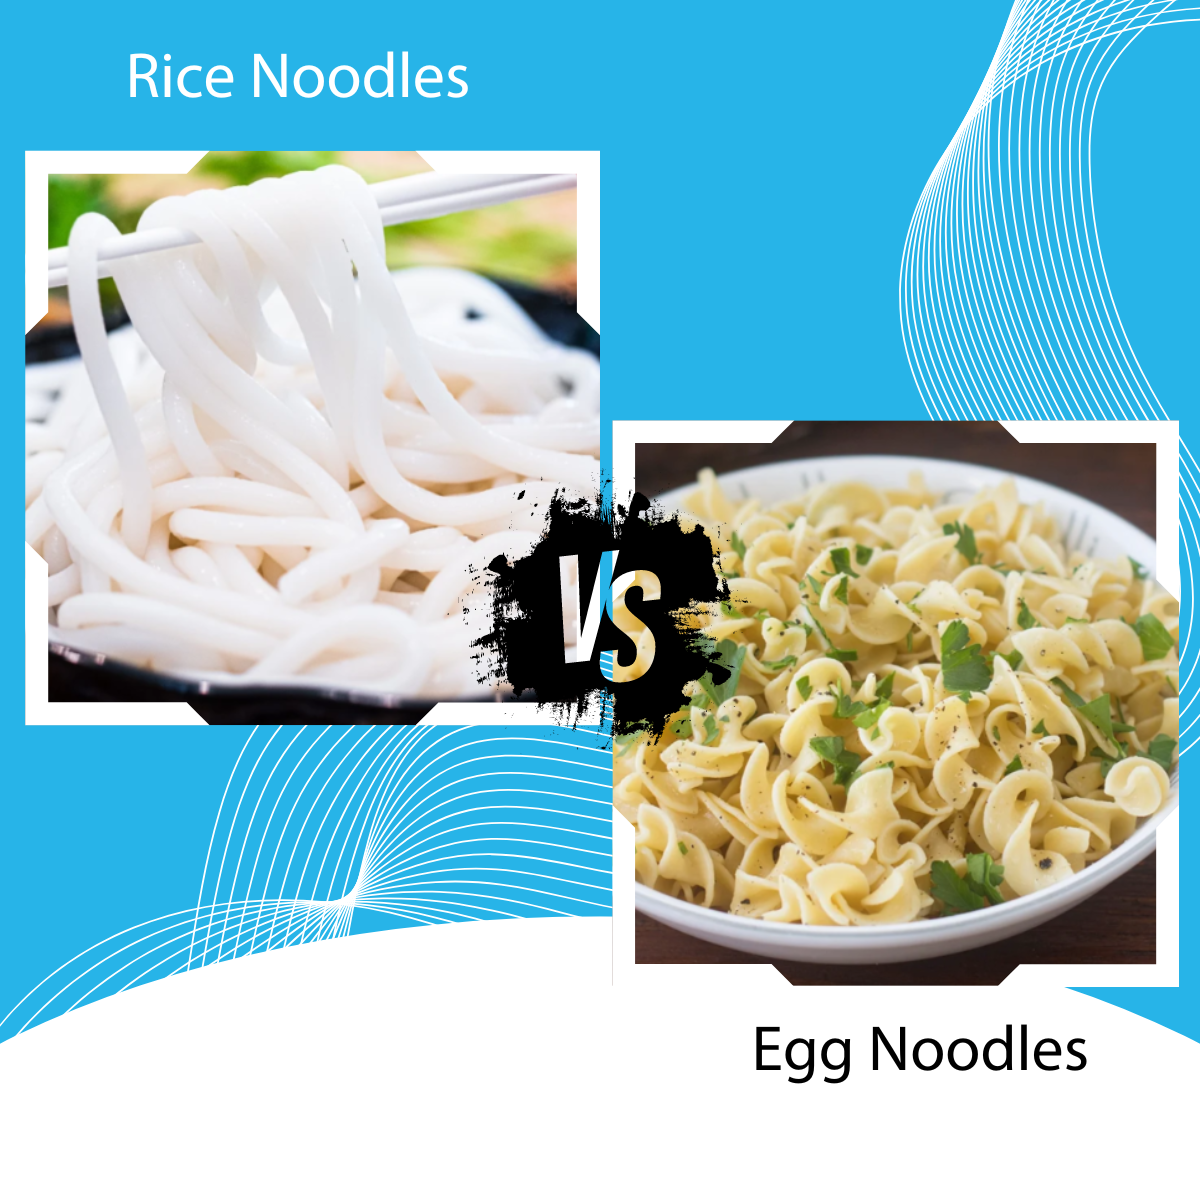 RICE NOODLES vs EGG NOODLES